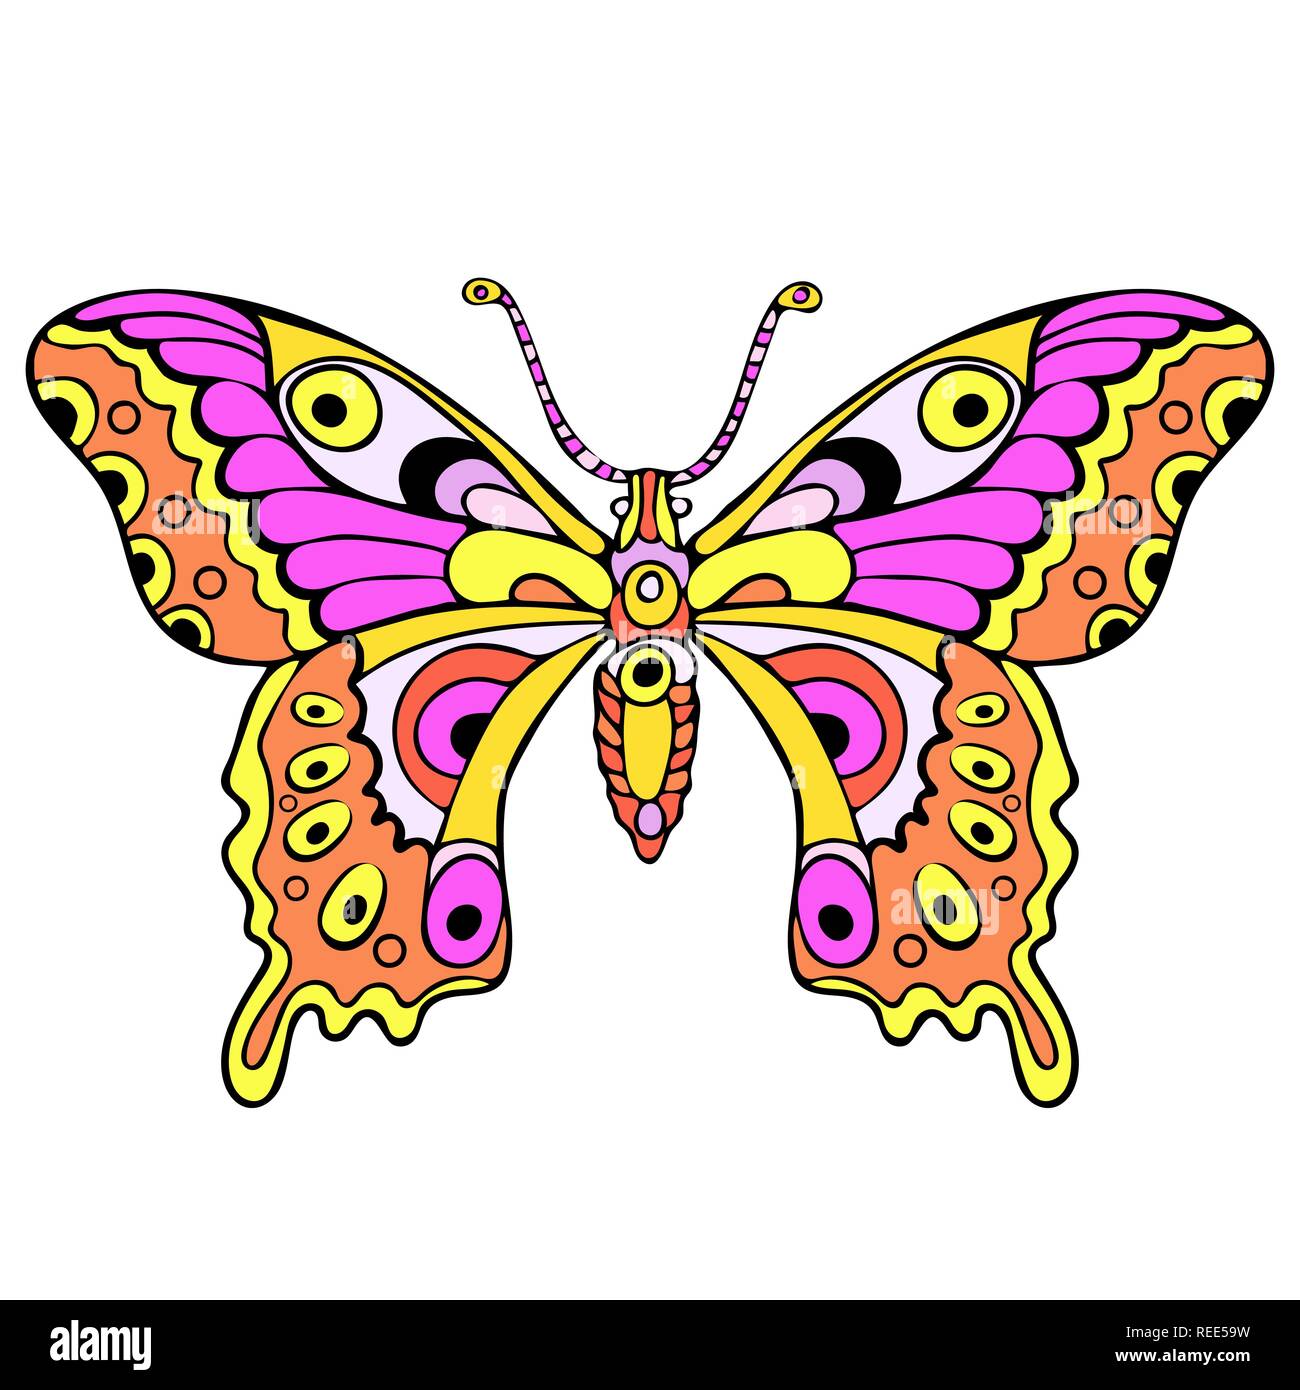 Abstract colorful butterfly, cartoon dessin à la main, impression textile, tatouage esquisse, vector illustration. Rose à motifs avec des insectes aux ailes jaunes voir bof Illustration de Vecteur